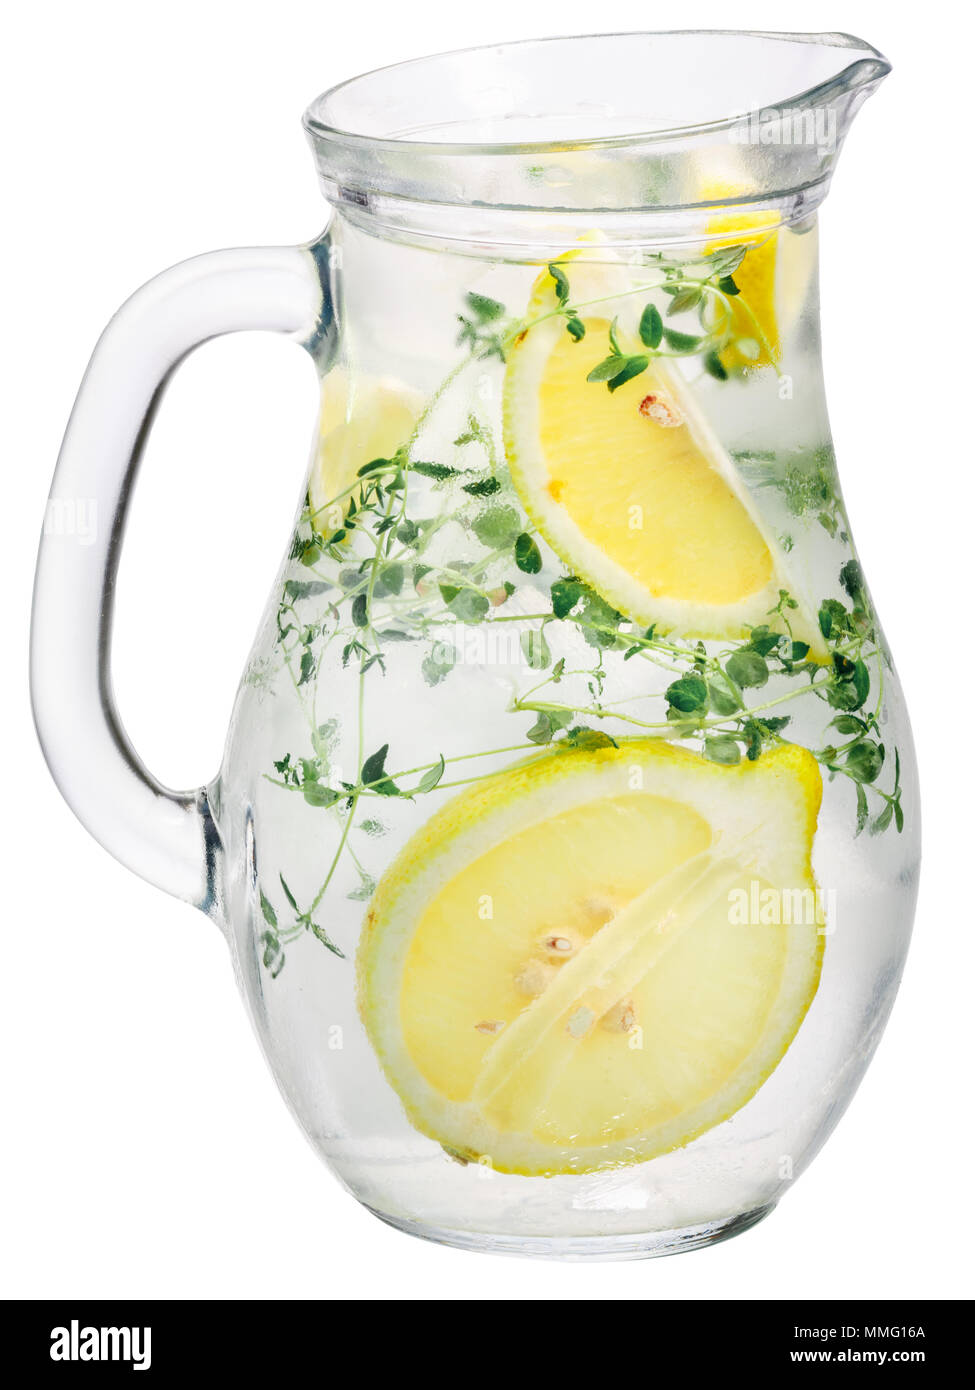 Verseuse de thym avec du citron ou de la limonade eau detox Banque D'Images